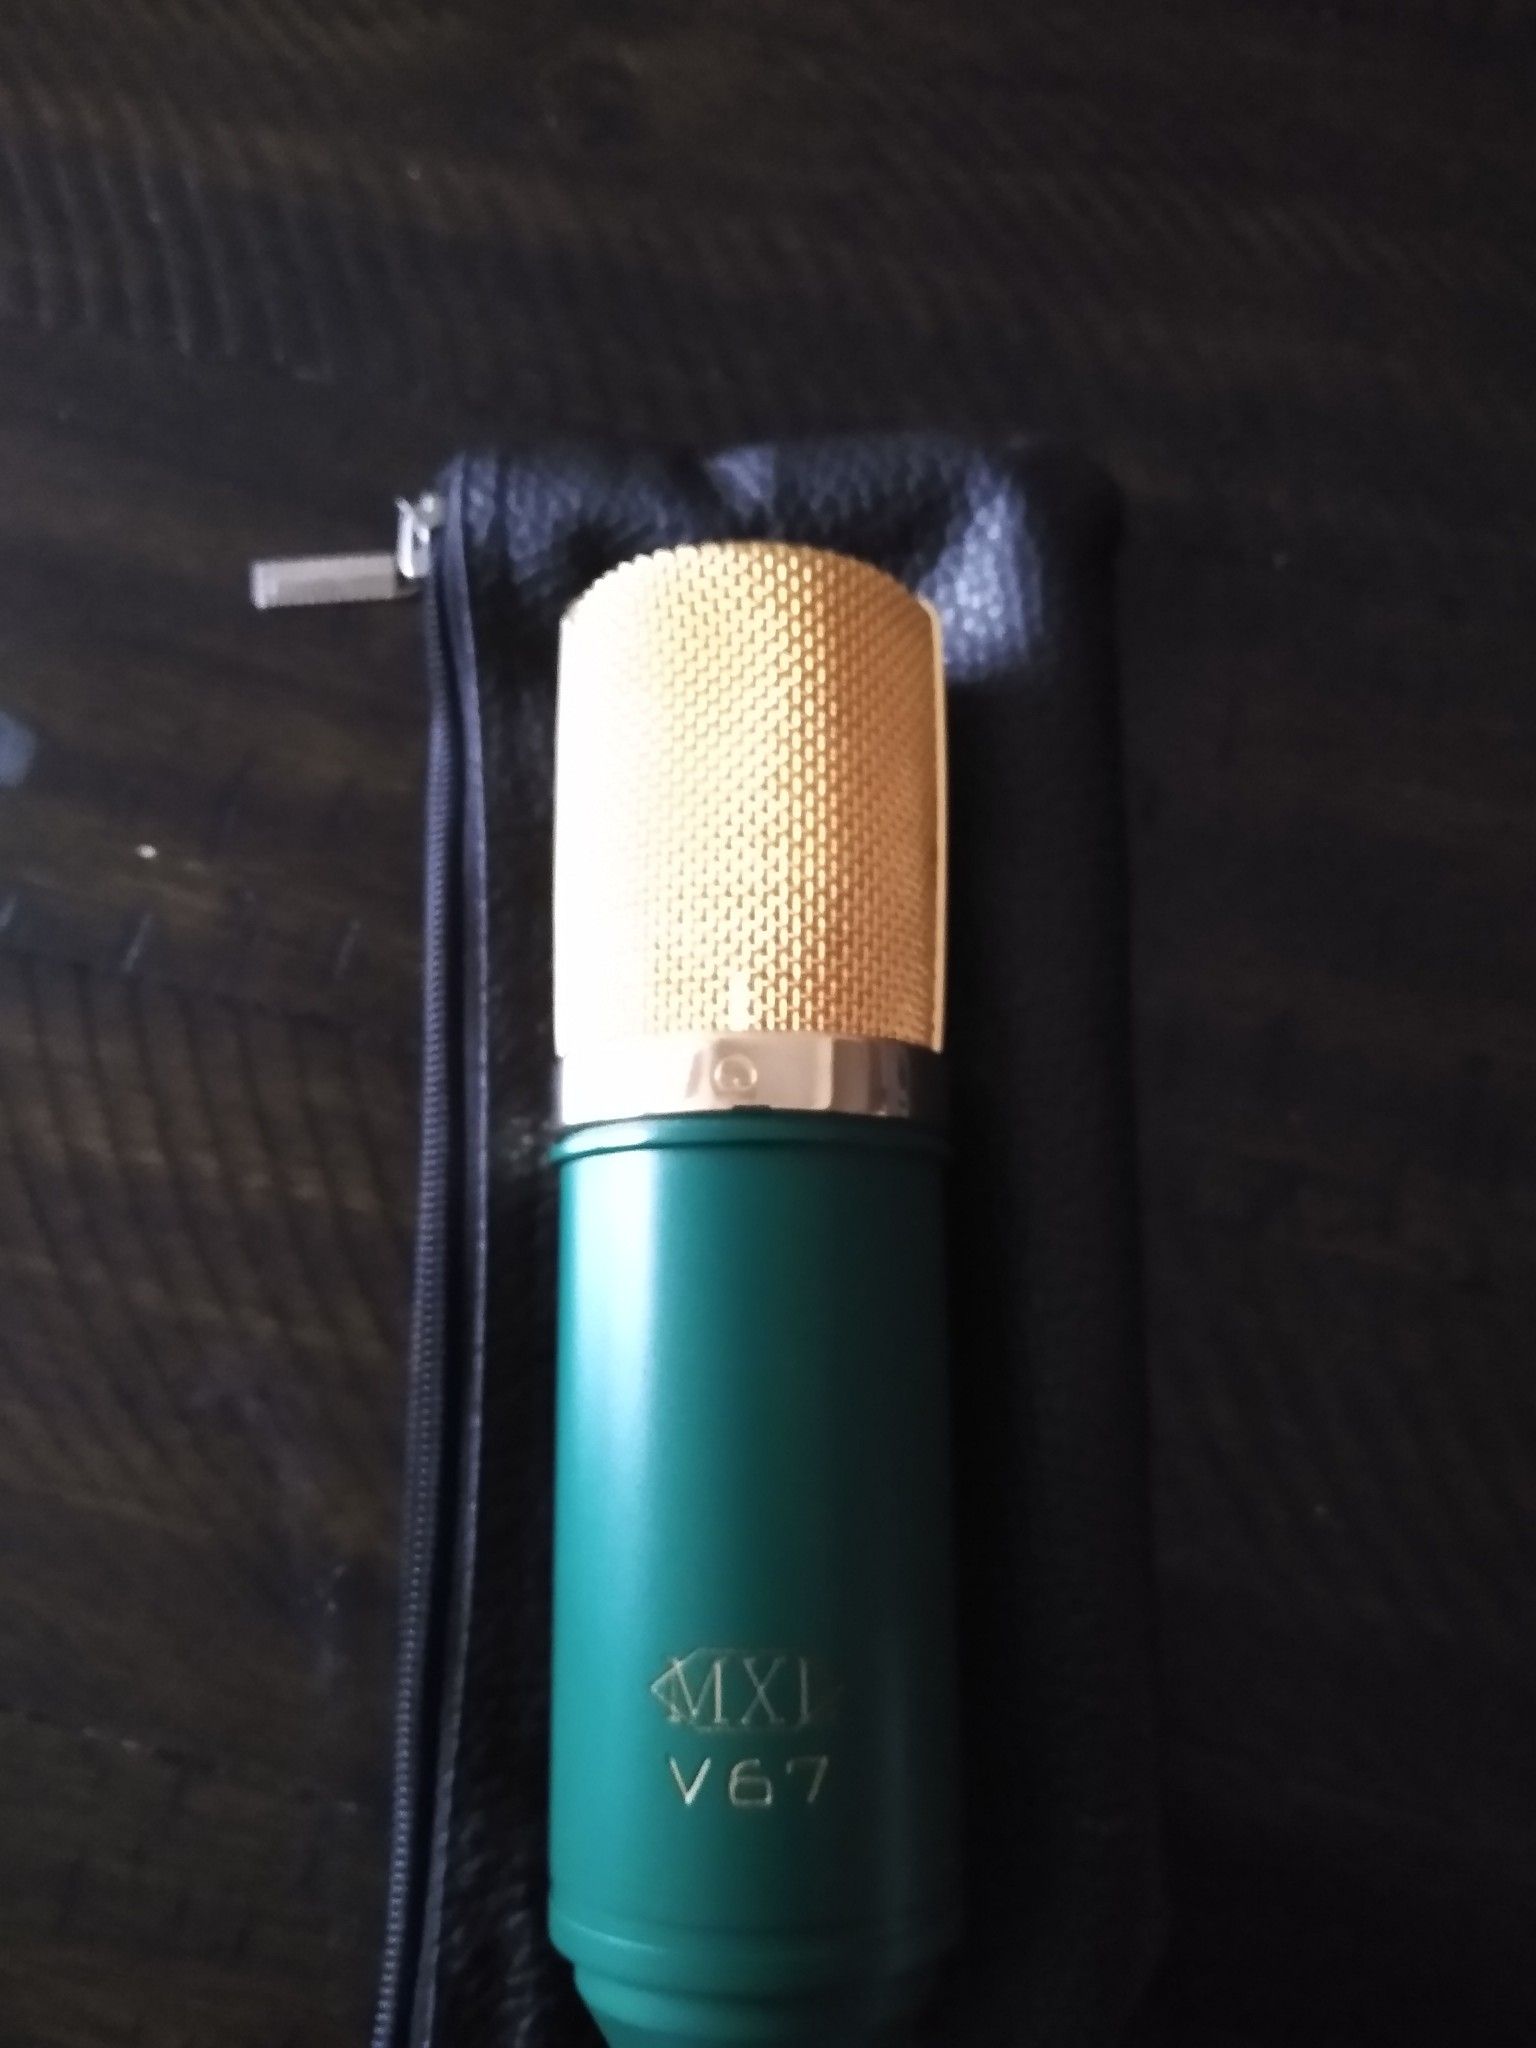 Mxl v67 mic